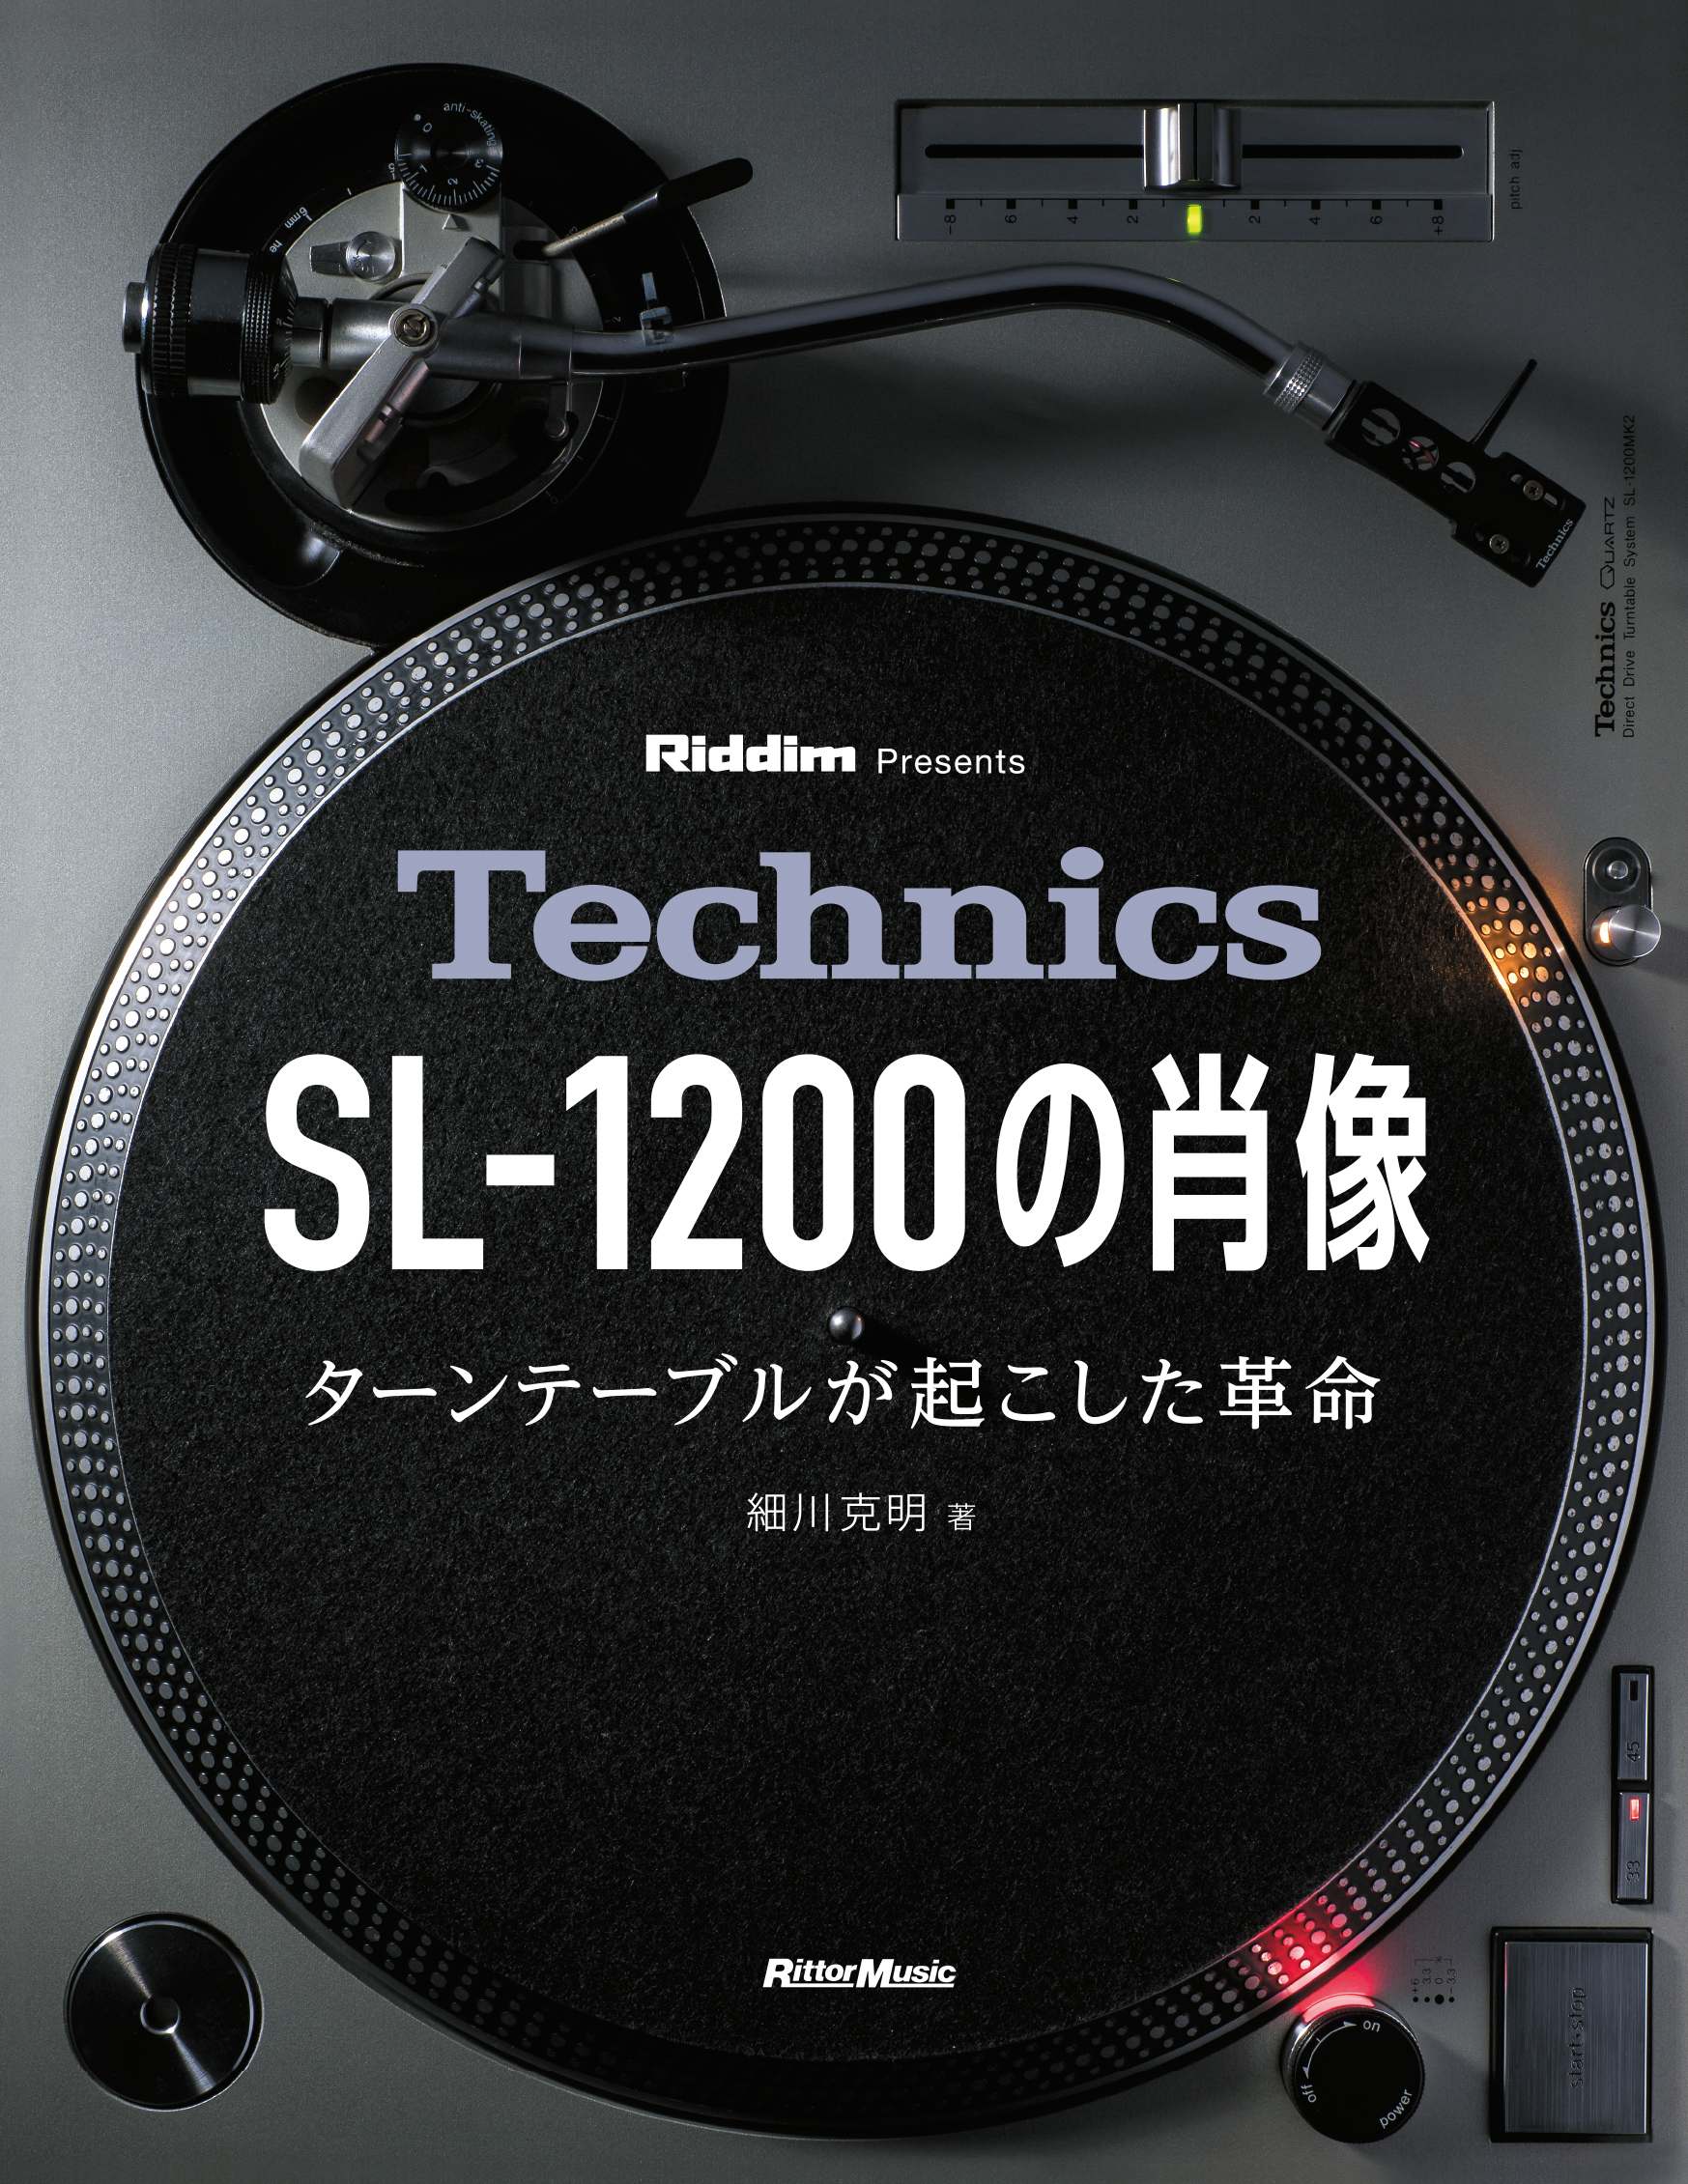 書籍『Technics SL-1200の肖像 ターンテーブルが起こした革命』発売 